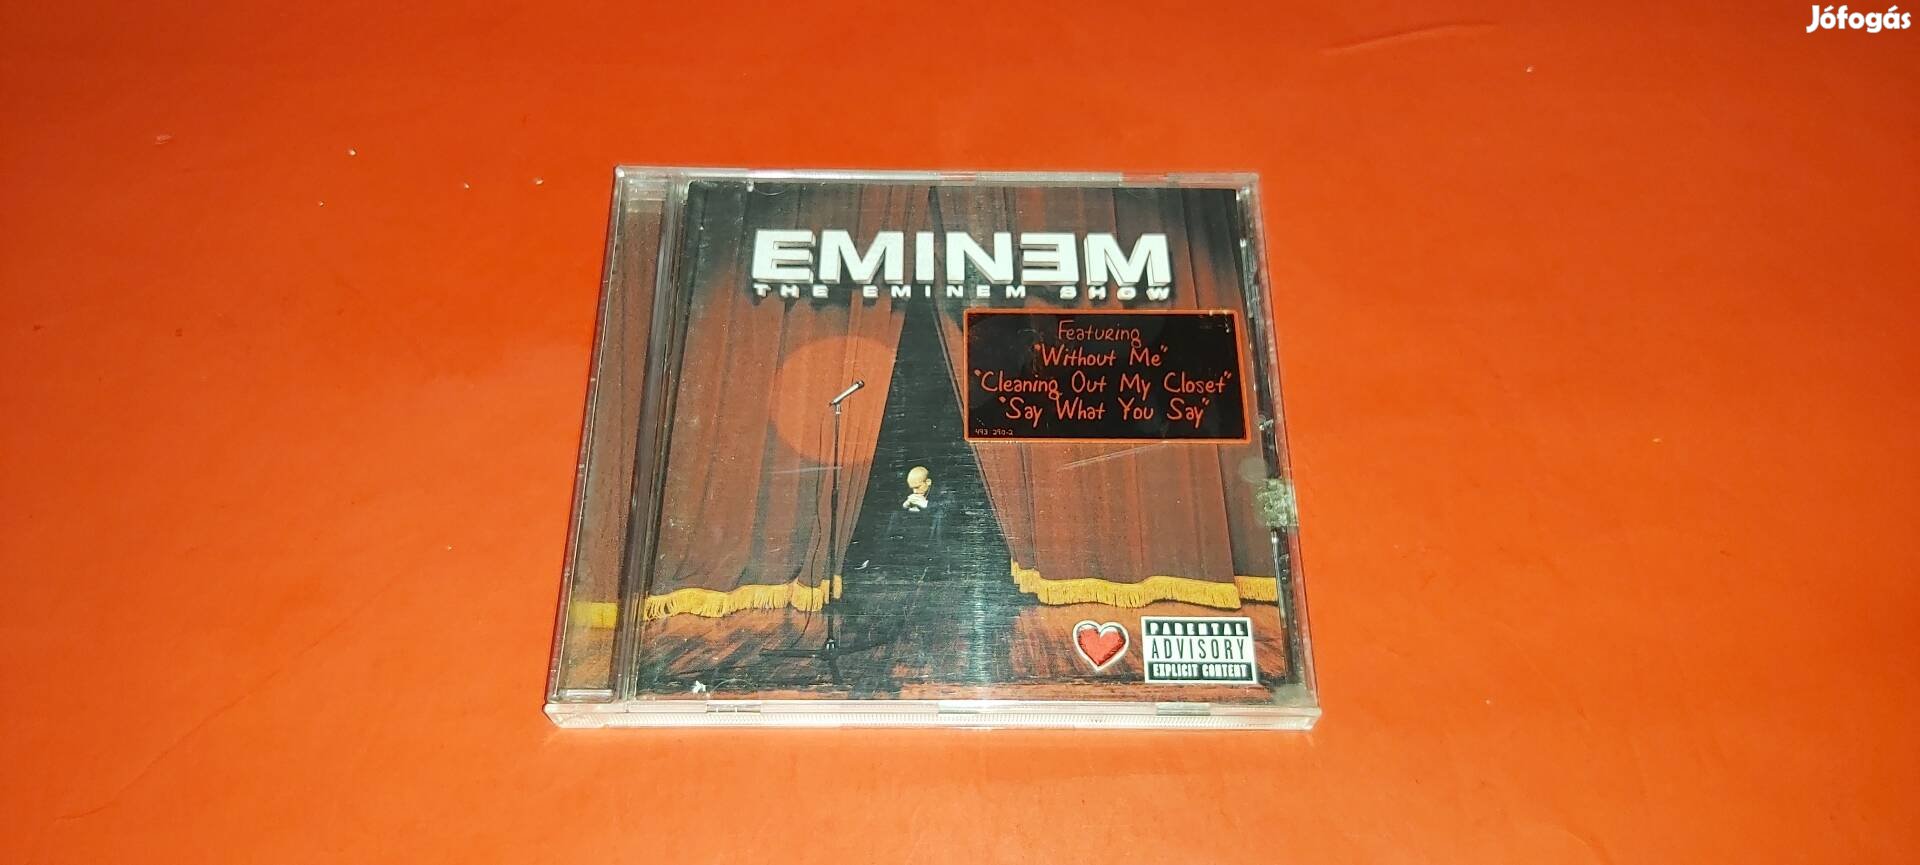 Eminem The Eminem show Cd 2002